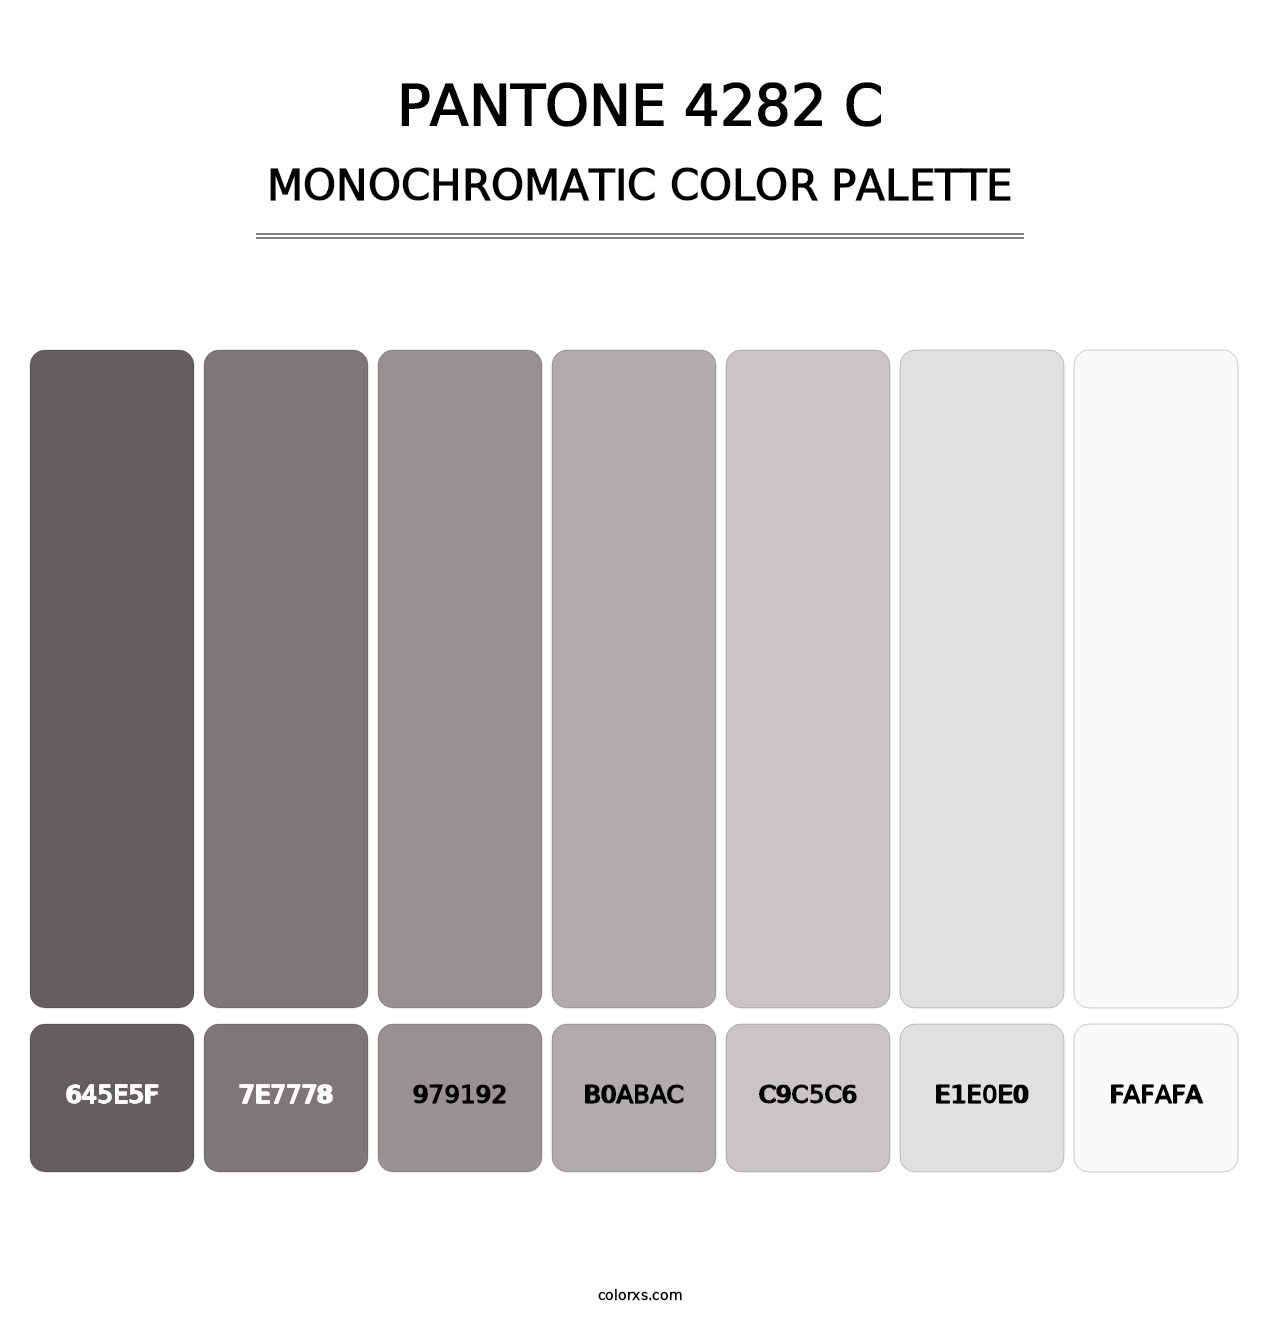 PANTONE 4282 C - Monochromatic Color Palette